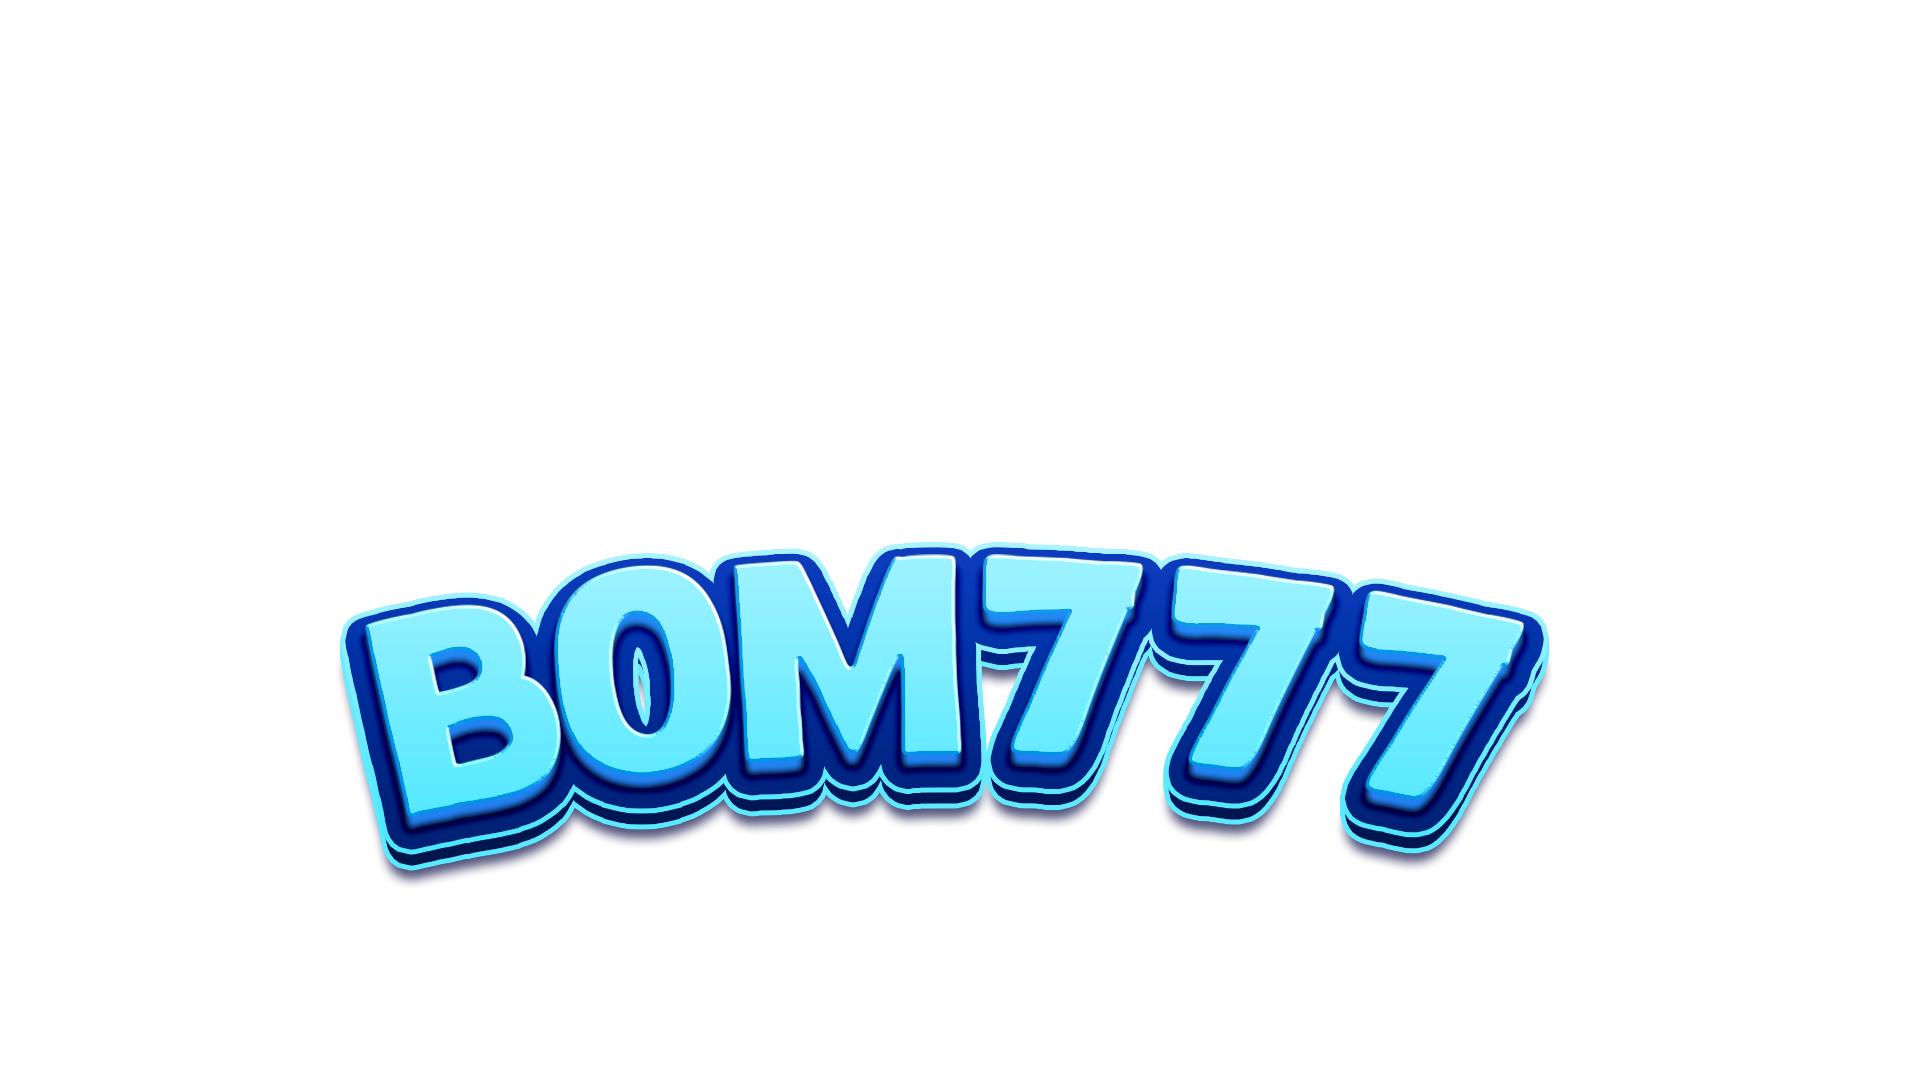 BOM777 | BOM 777